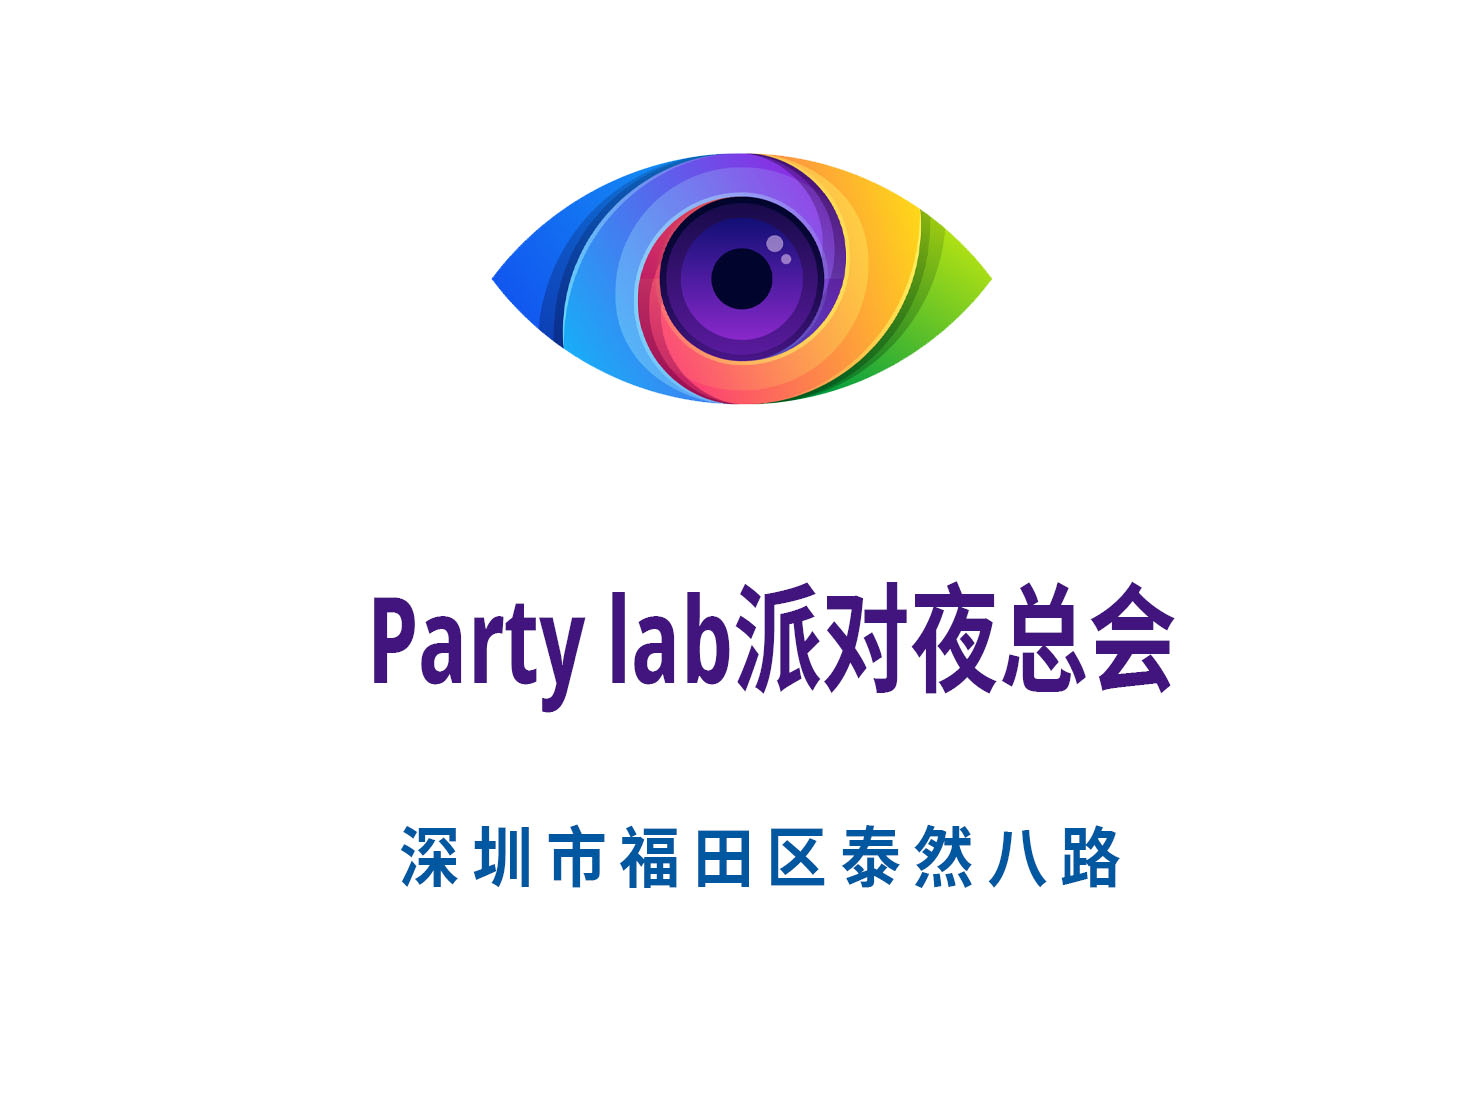 深圳Party lab派对夜总会